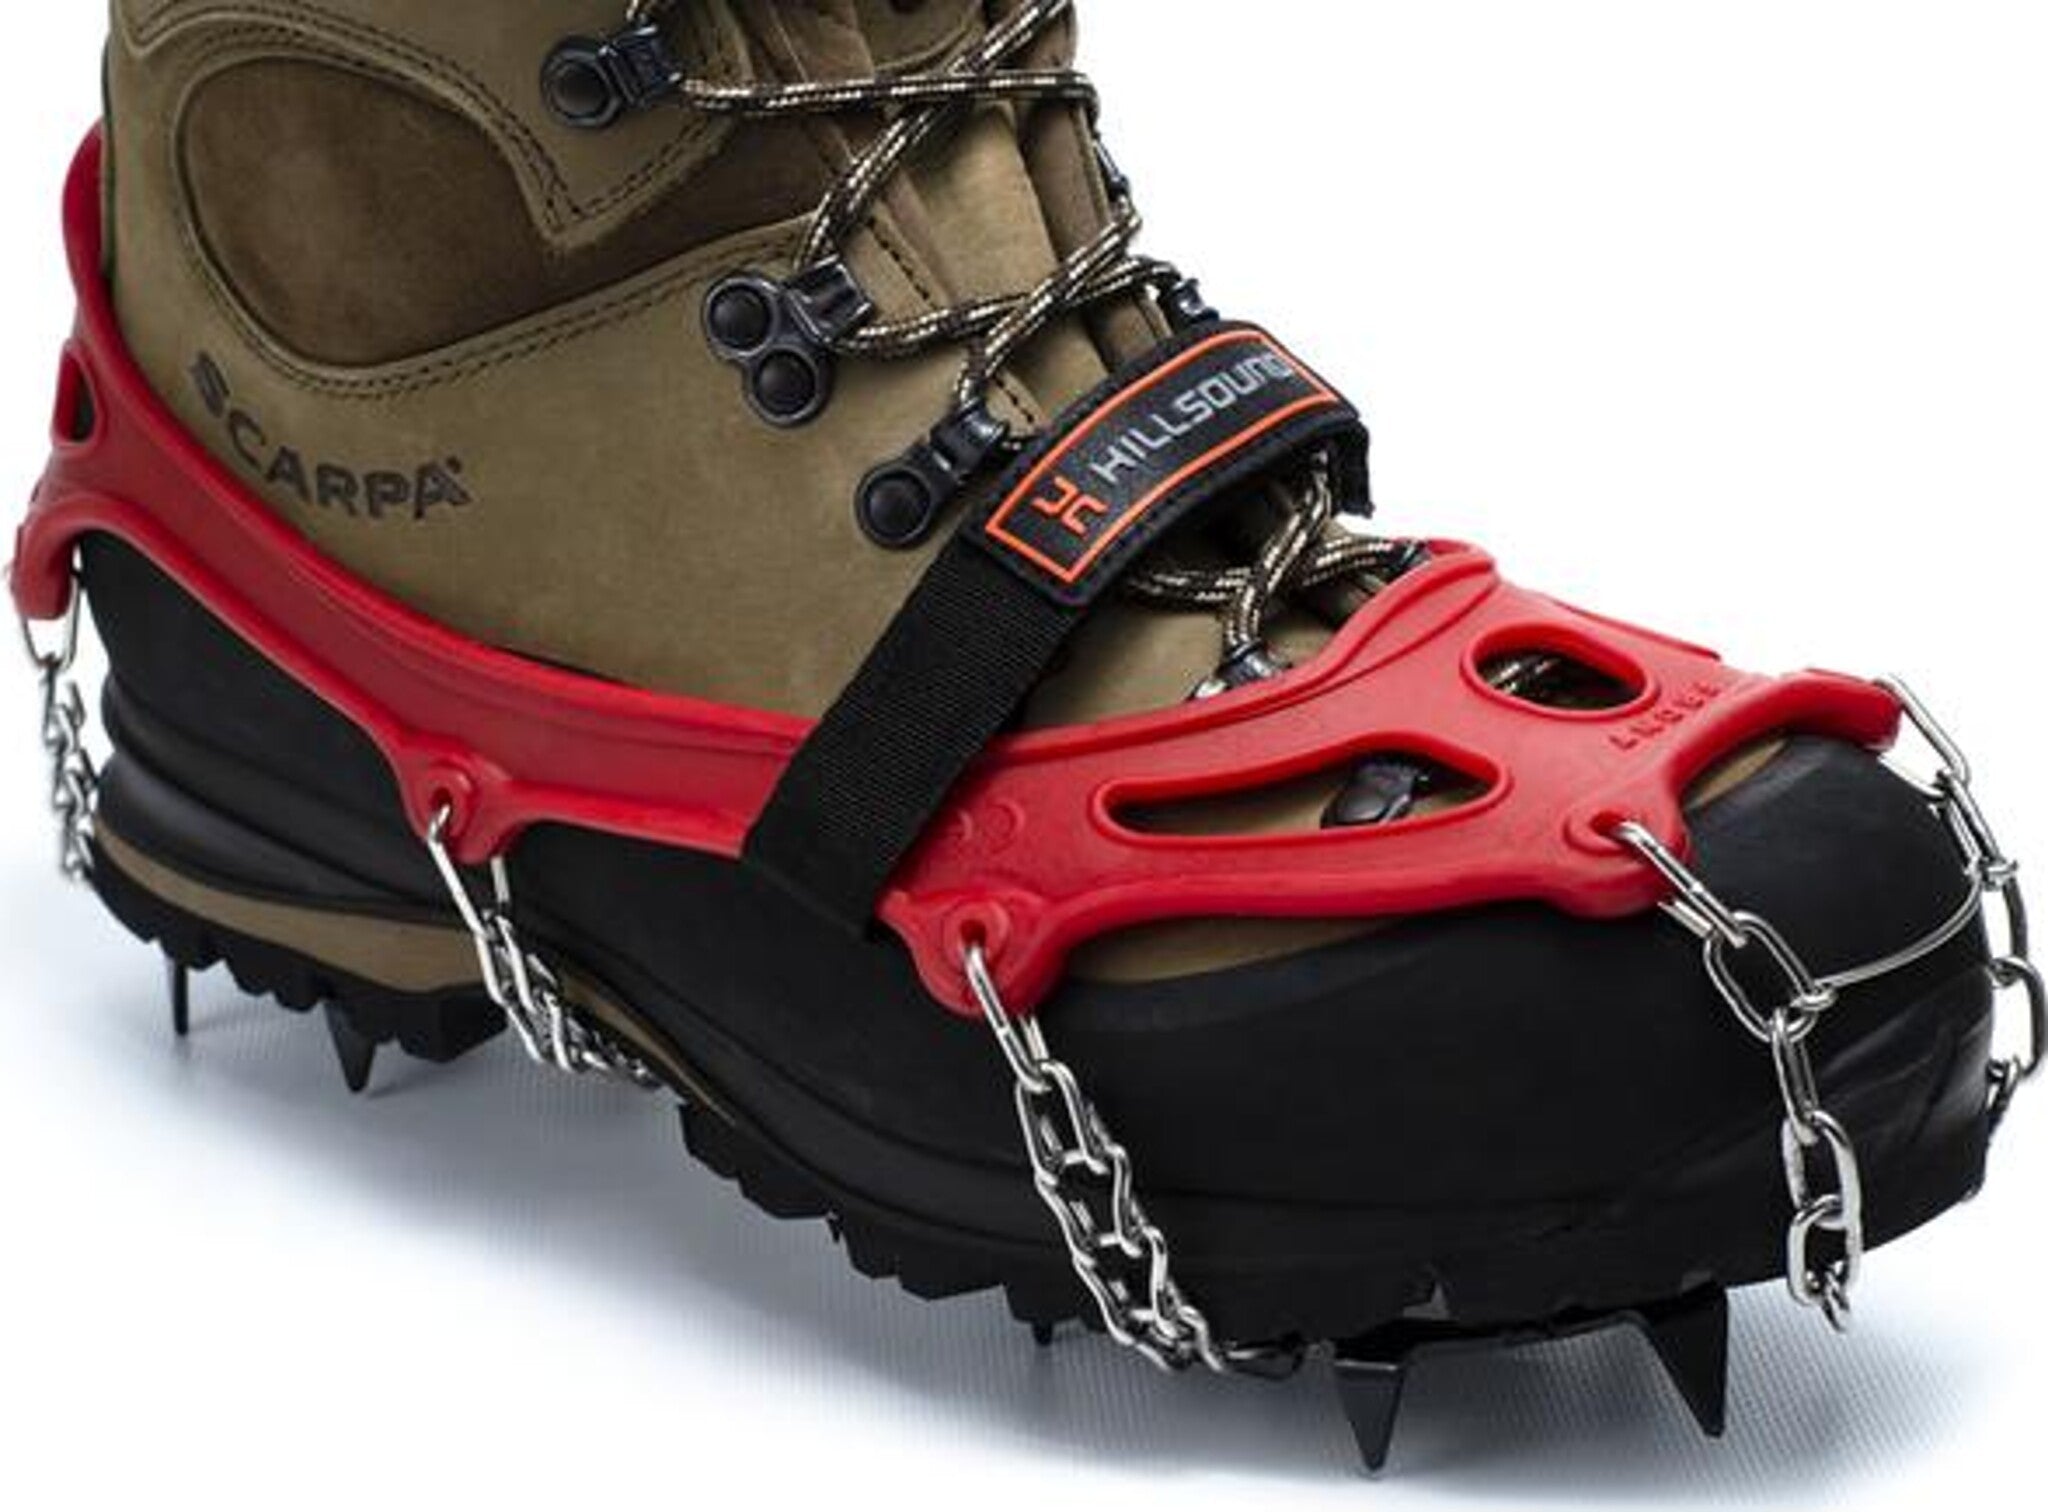 Crampons pour chaussures de traction/bottes de marche/randonnée Stabil Walk  Plus, adultes, tailles diverses